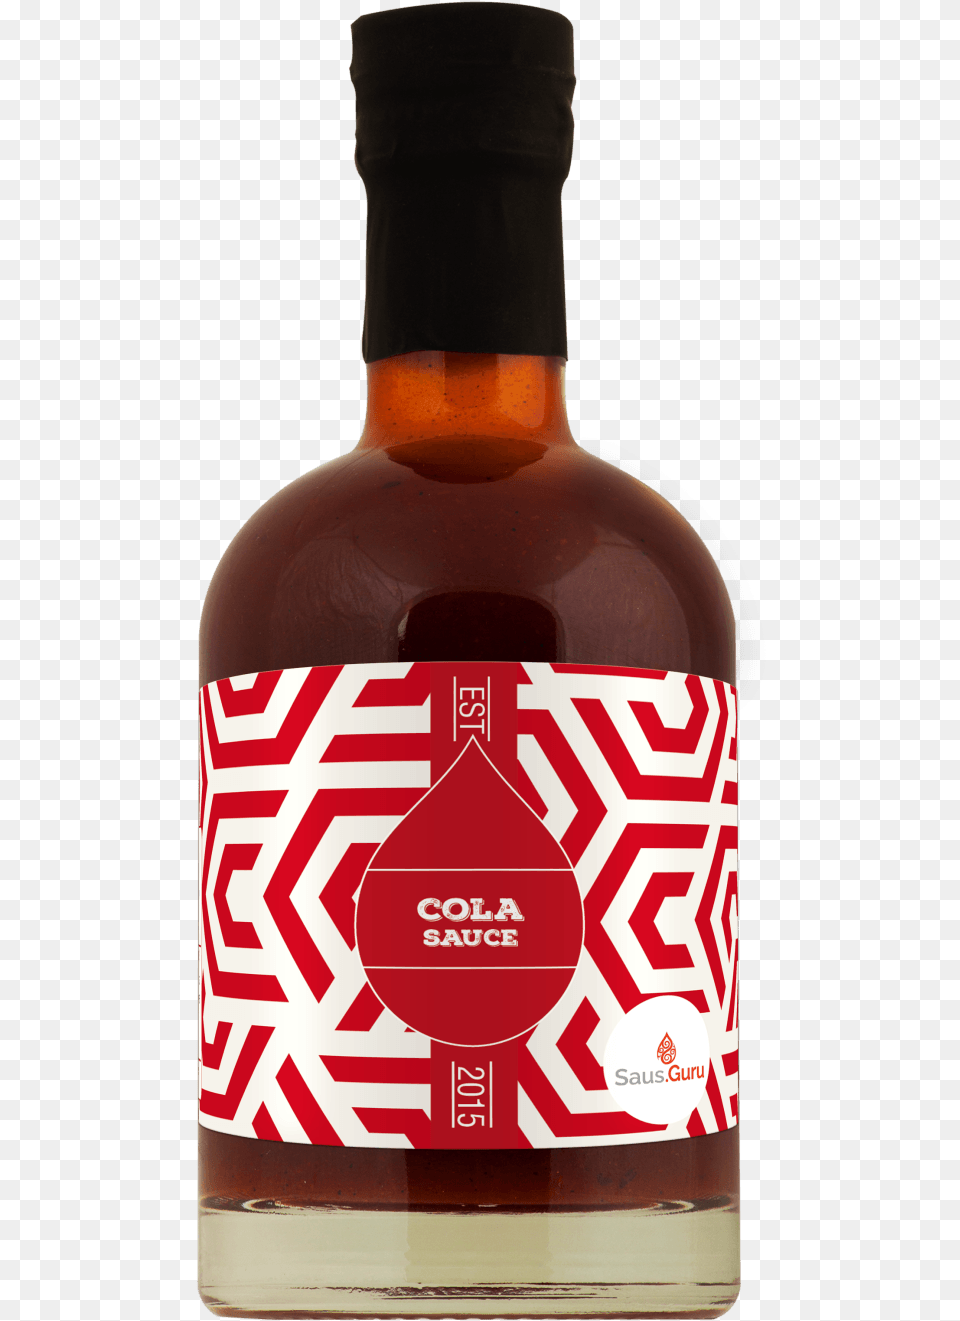 Bbq Sauce Clipart Cola Saus, Alcohol, Beverage, Liquor, Bottle Free Transparent Png